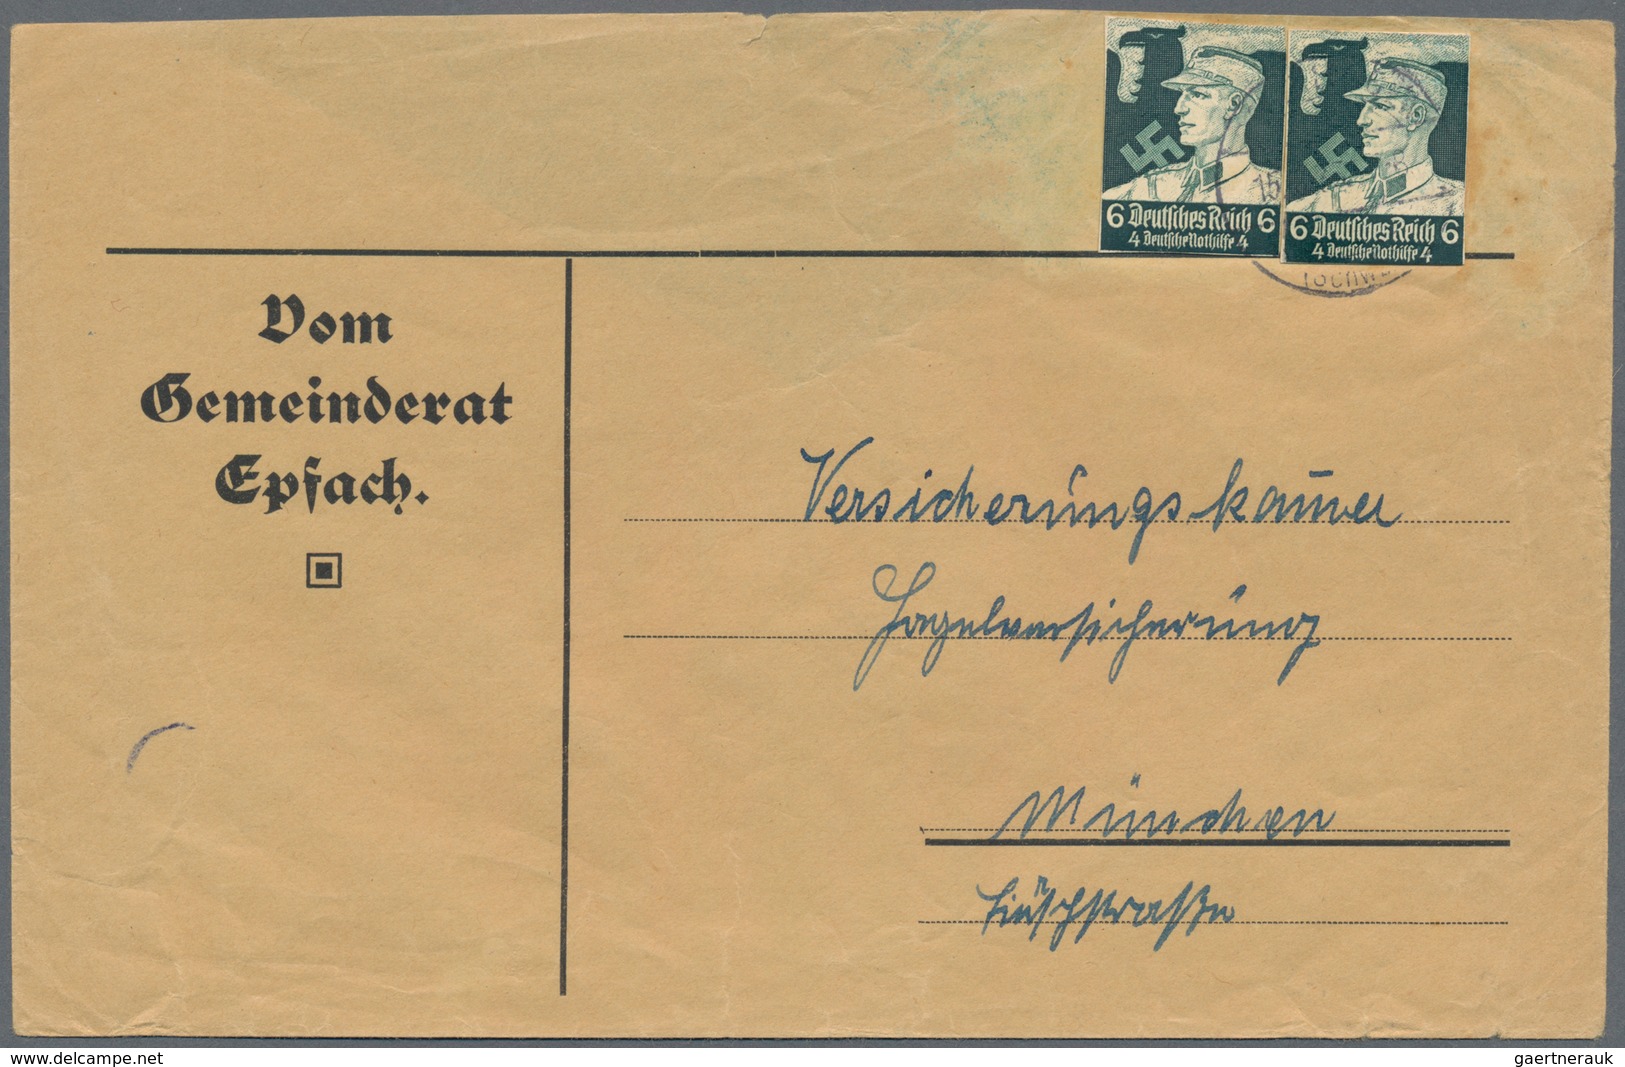 Deutsches Reich: 1878/1945, gehaltvoller Sammlungsbestand mit GANZSACHEN-AUSSCHNITTEN als Frankatur